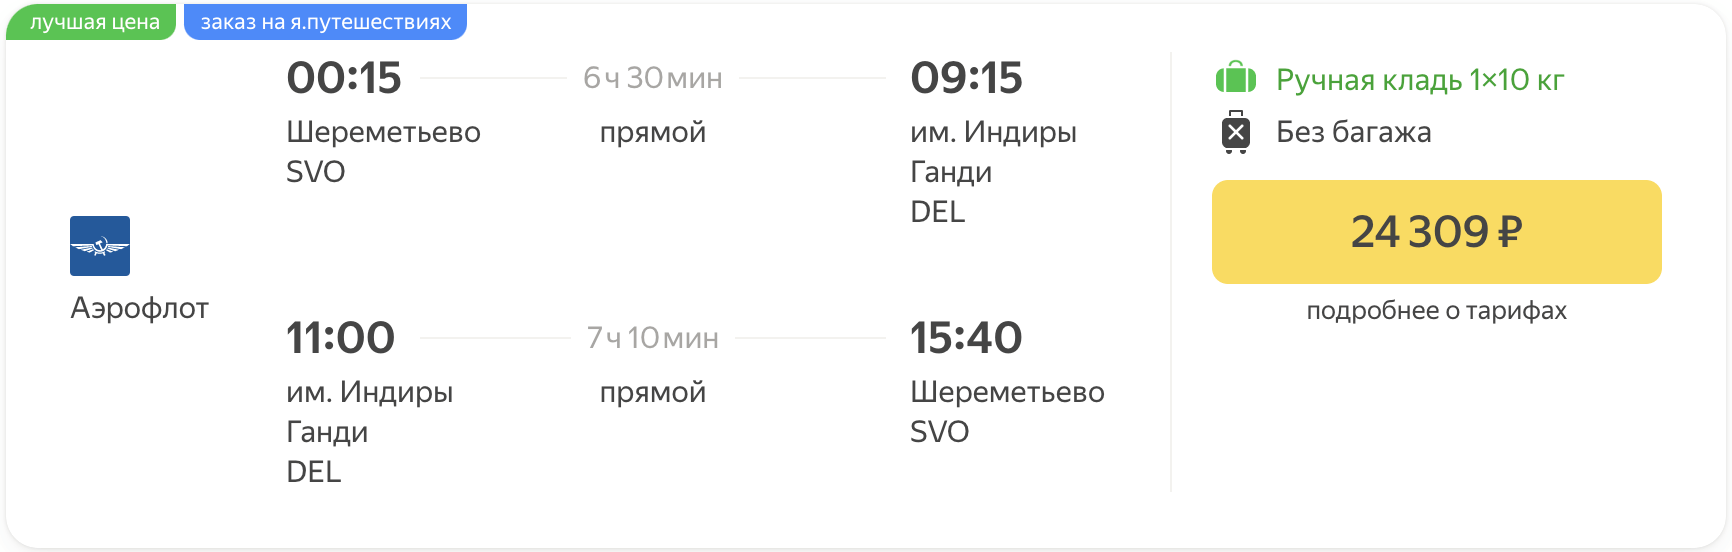 יותר זול! עם Aeroflot ממוסקבה לדלהי מ-24300₽ הלוך ושוב